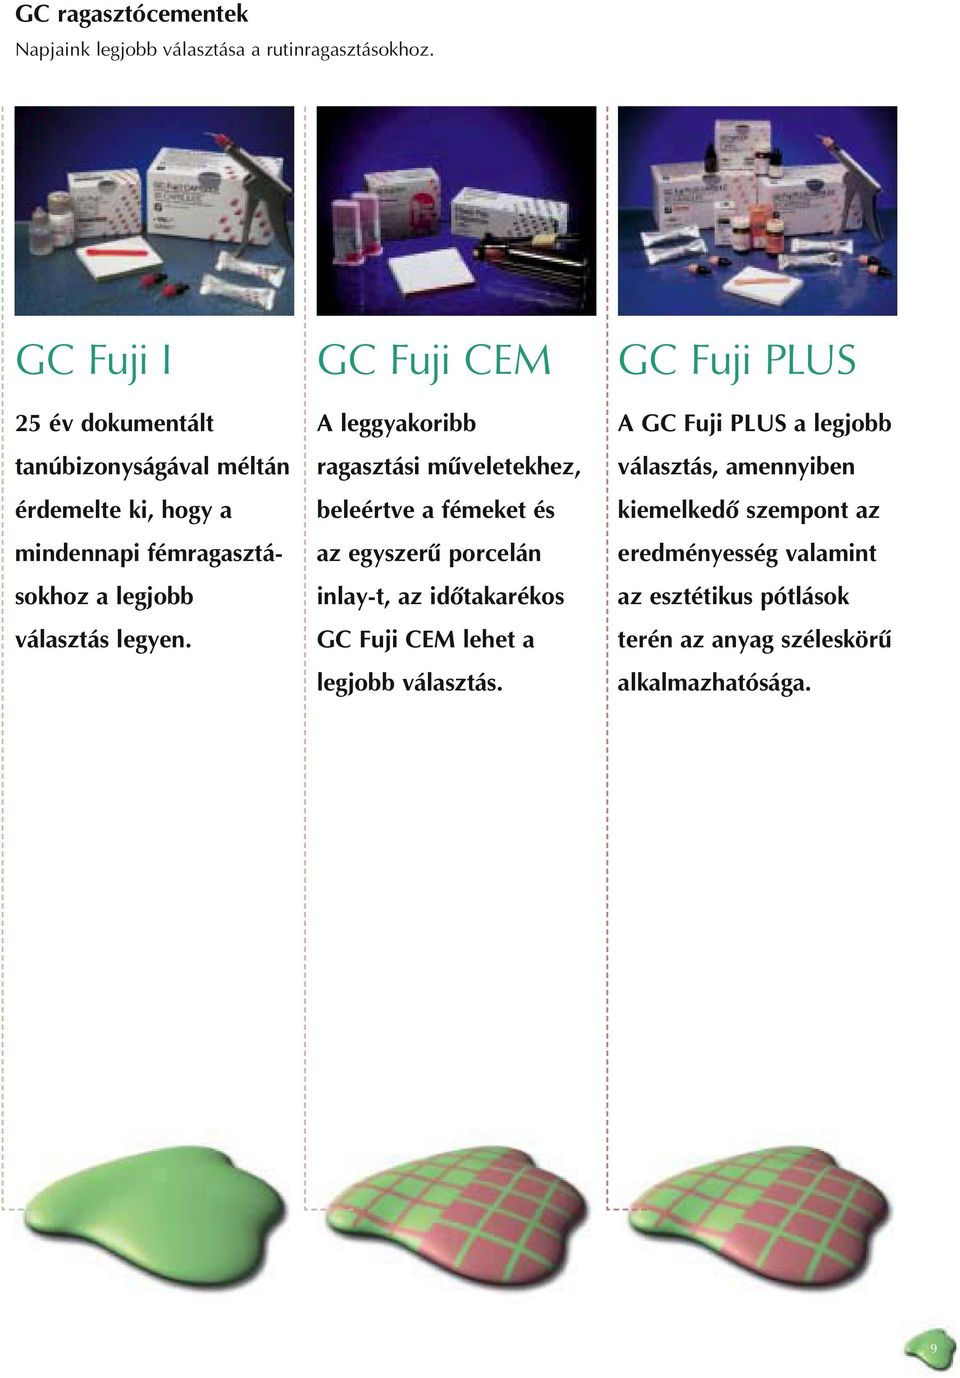 GC Fuji CEM A leggyakoribb ragasztási mûveletekhez, beleértve a fémeket és az egyszerû porcelán inlay-t, az idôtakarékos GC Fuji CEM